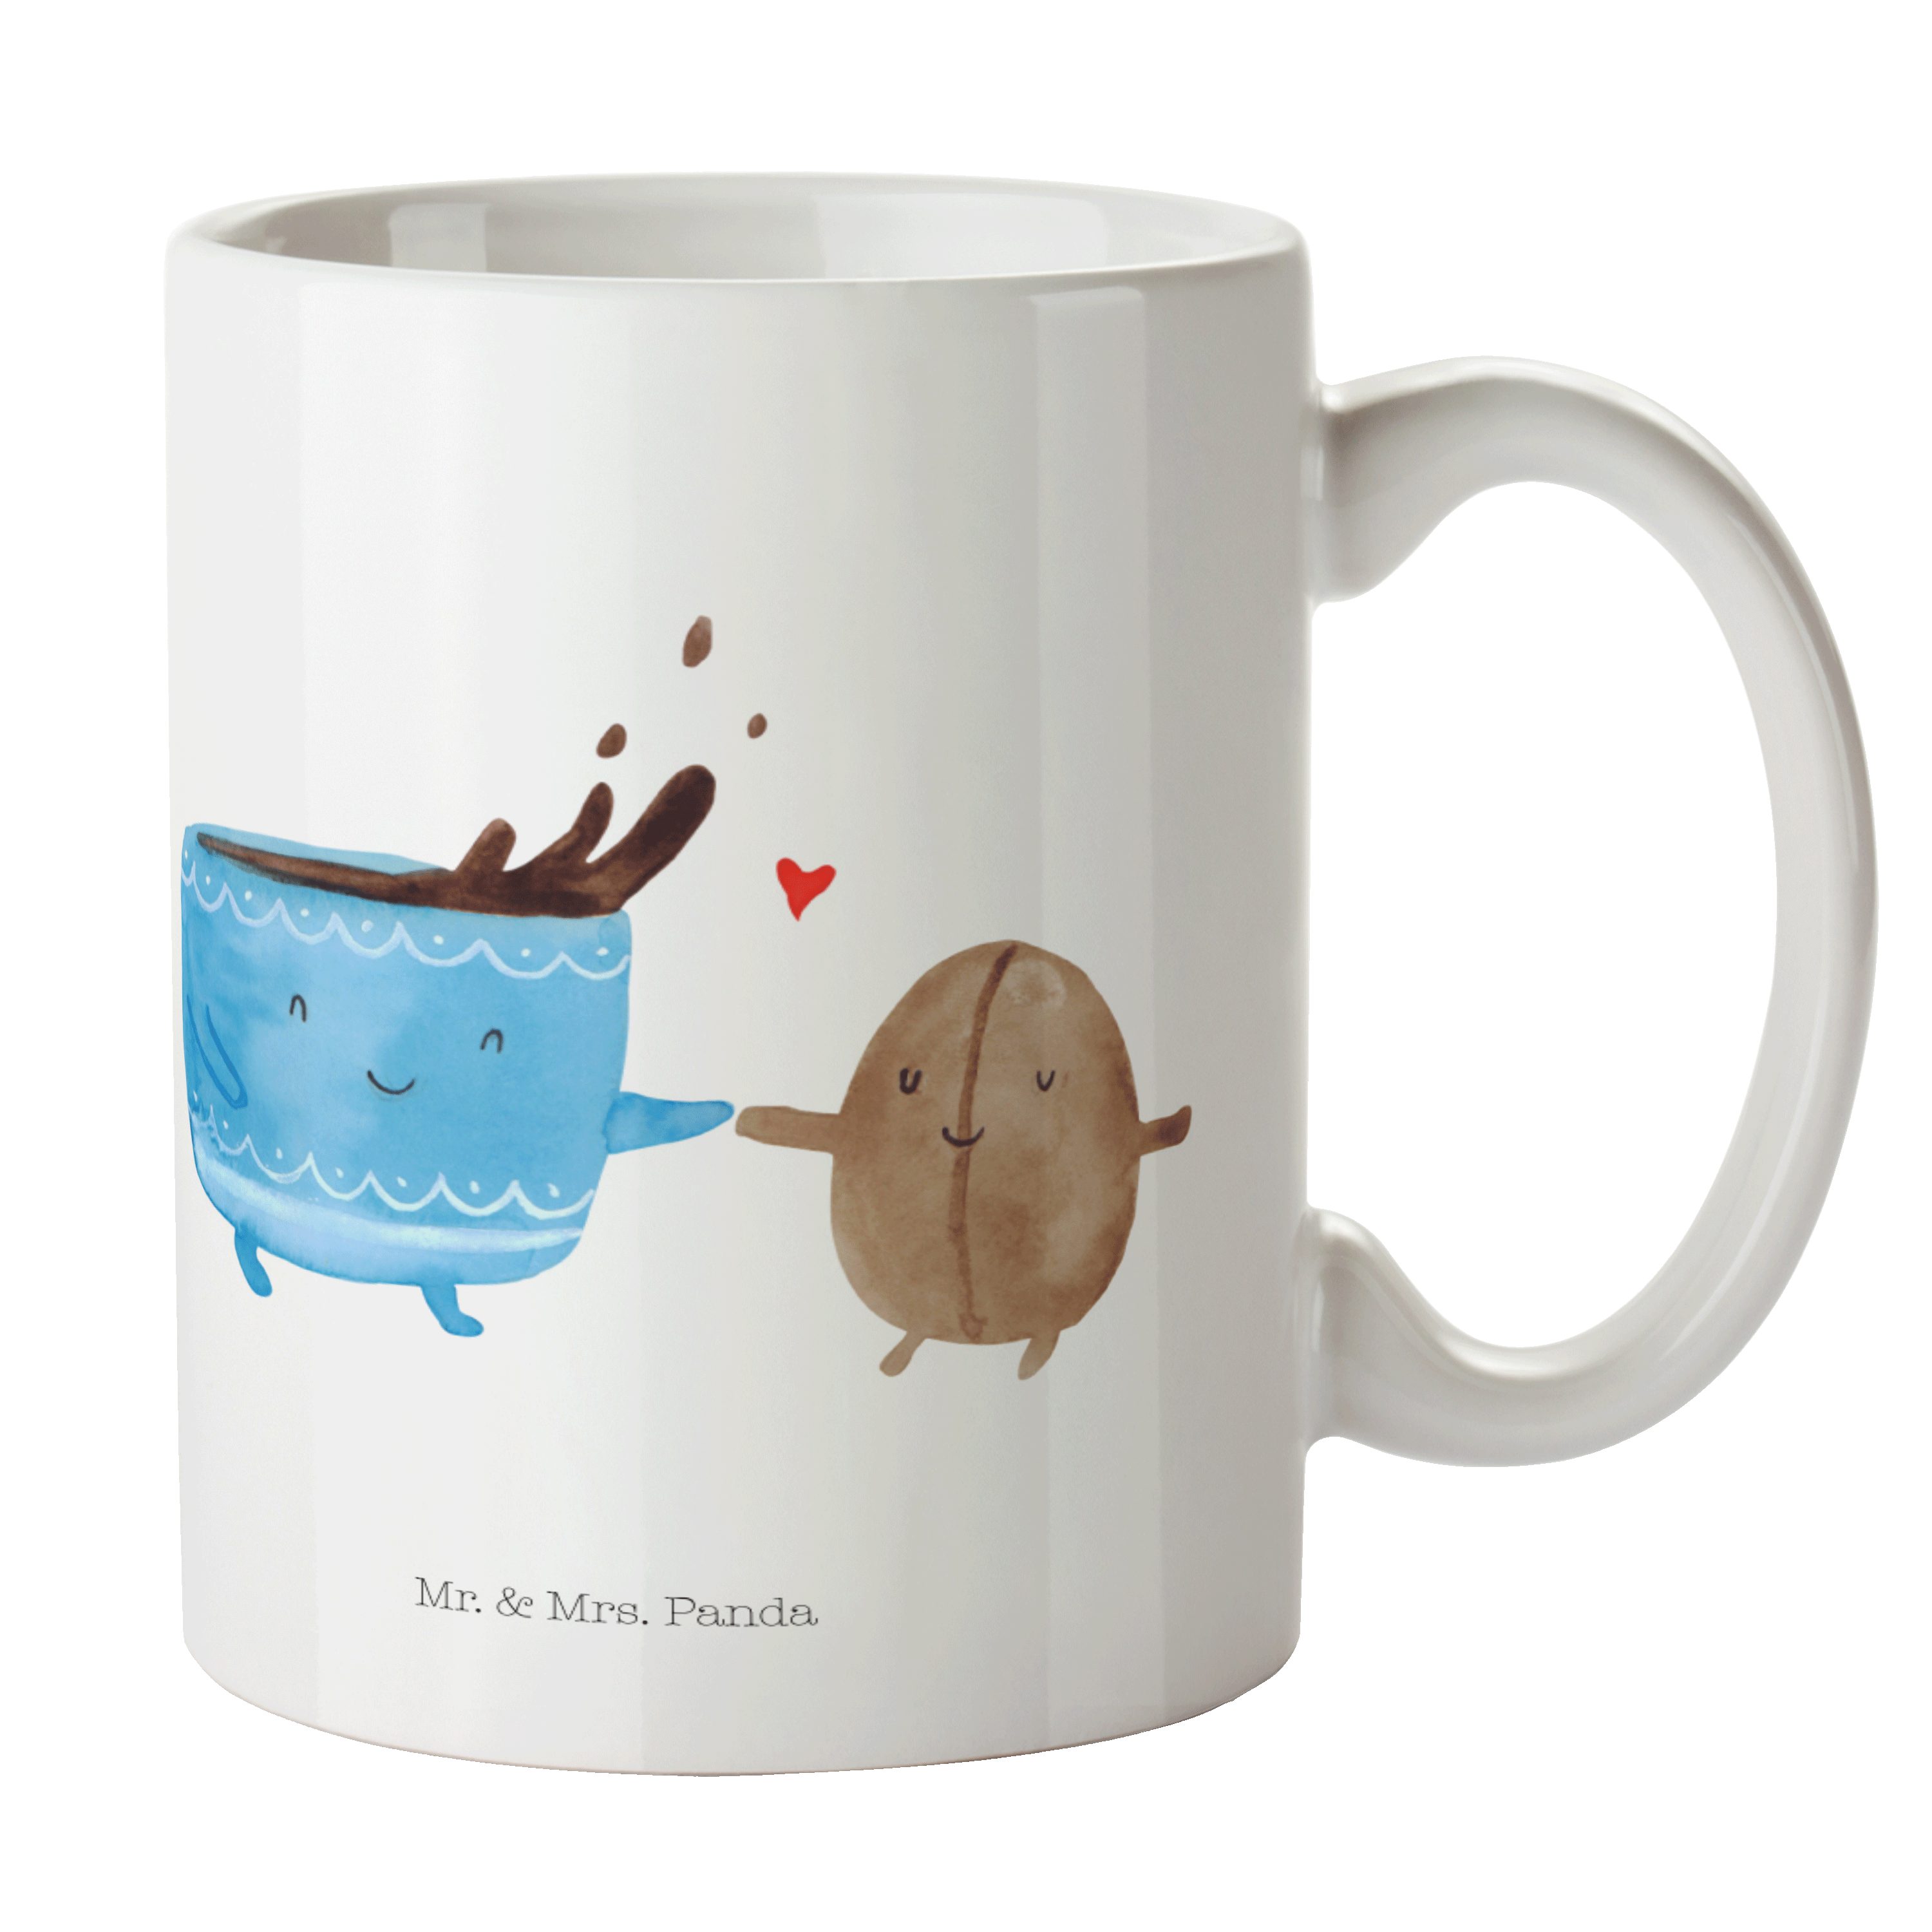 Mr. & Mrs. Panda Tasse Kaffee Bohne - Weiß - Geschenk, Zufriedenheit, lustige Sprüche, Tasse, Keramik